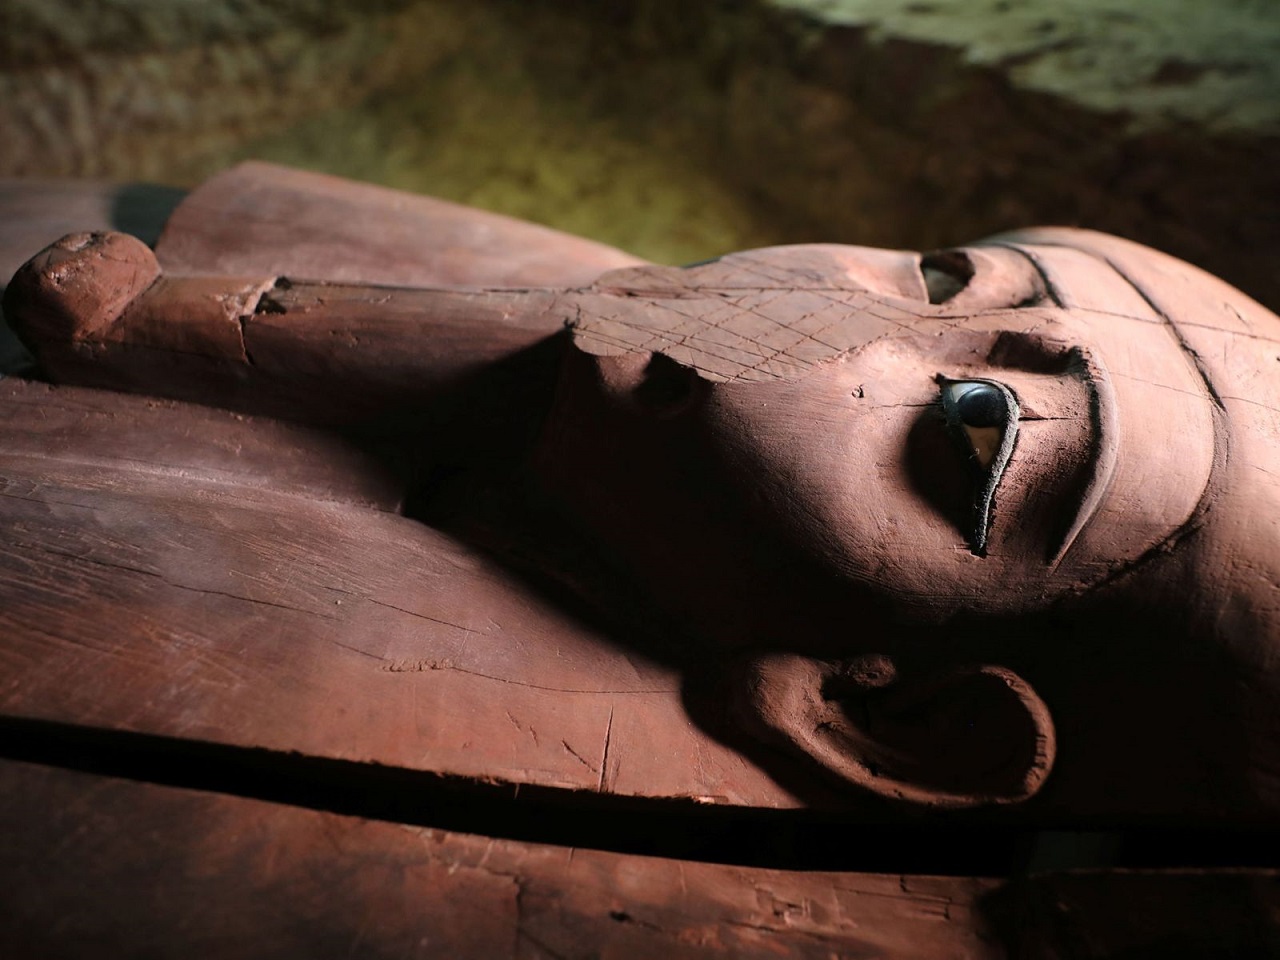 ეგვიპტეში უძველესი ნეკროპოლისი აღმოაჩინეს - სამარხი სავსეა სარკოფაგებით